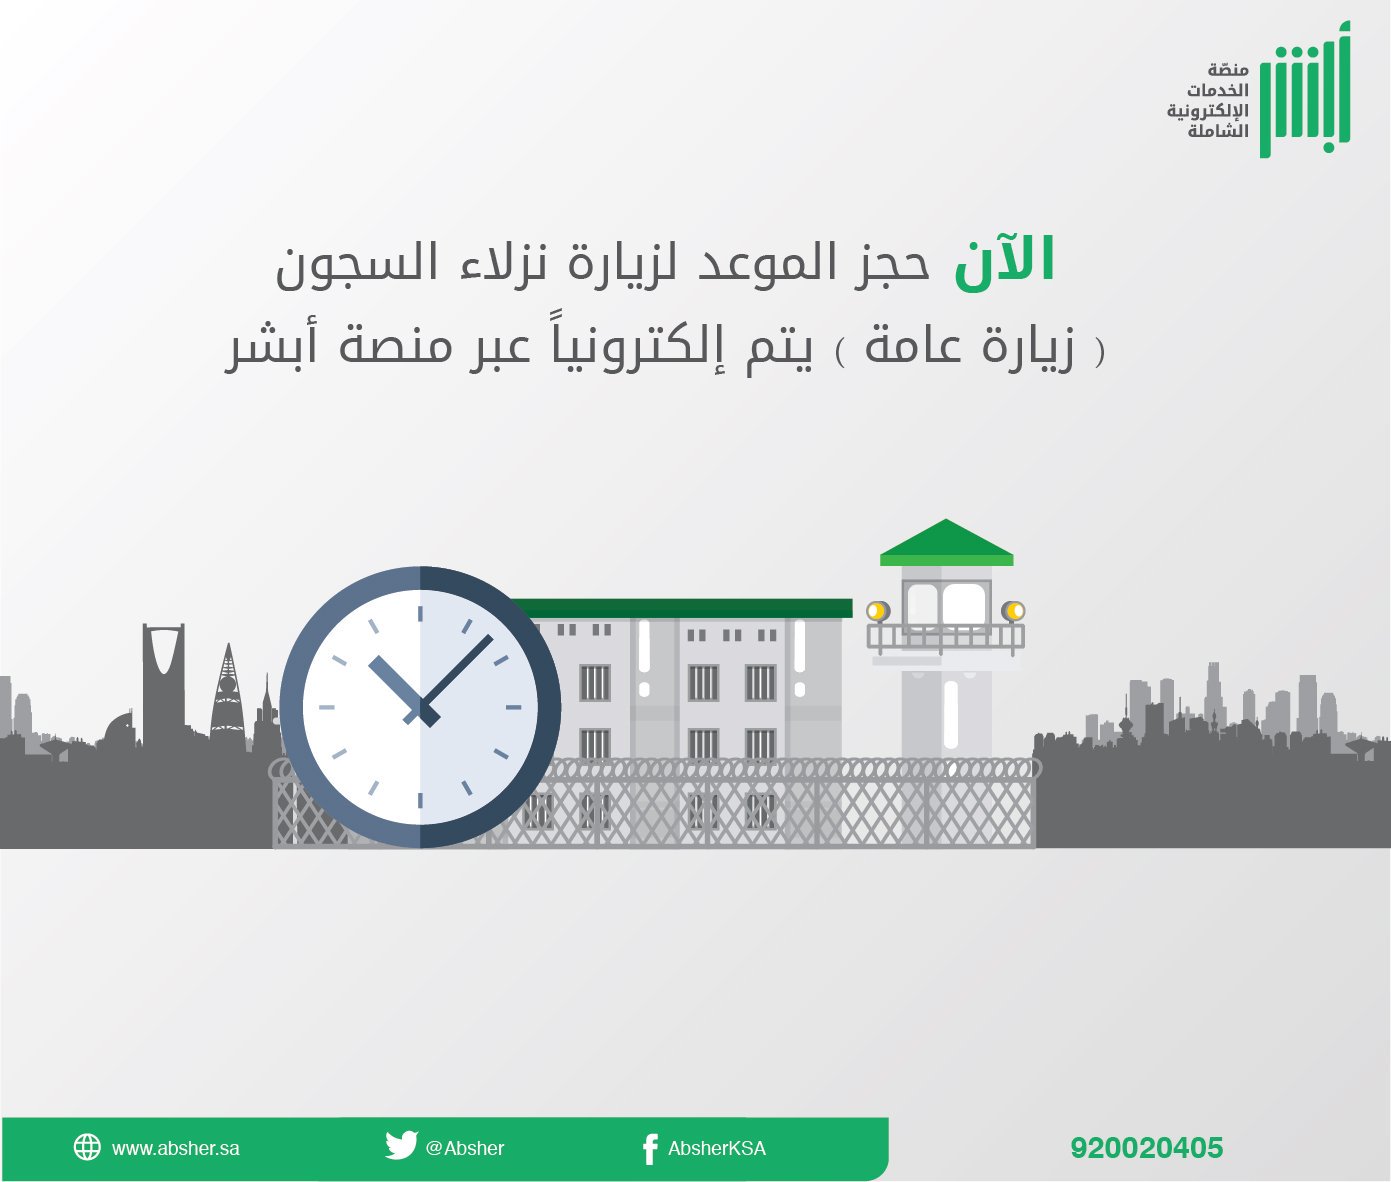 طريقة حجز موعد زيارة سجين في السعودية 1445 بـ 3 خطوات عن طريق منصة أبشر 𝕎𝕎𝕎.𝔸𝔹𝕊ℍ𝔼ℝ.𝕊𝔸